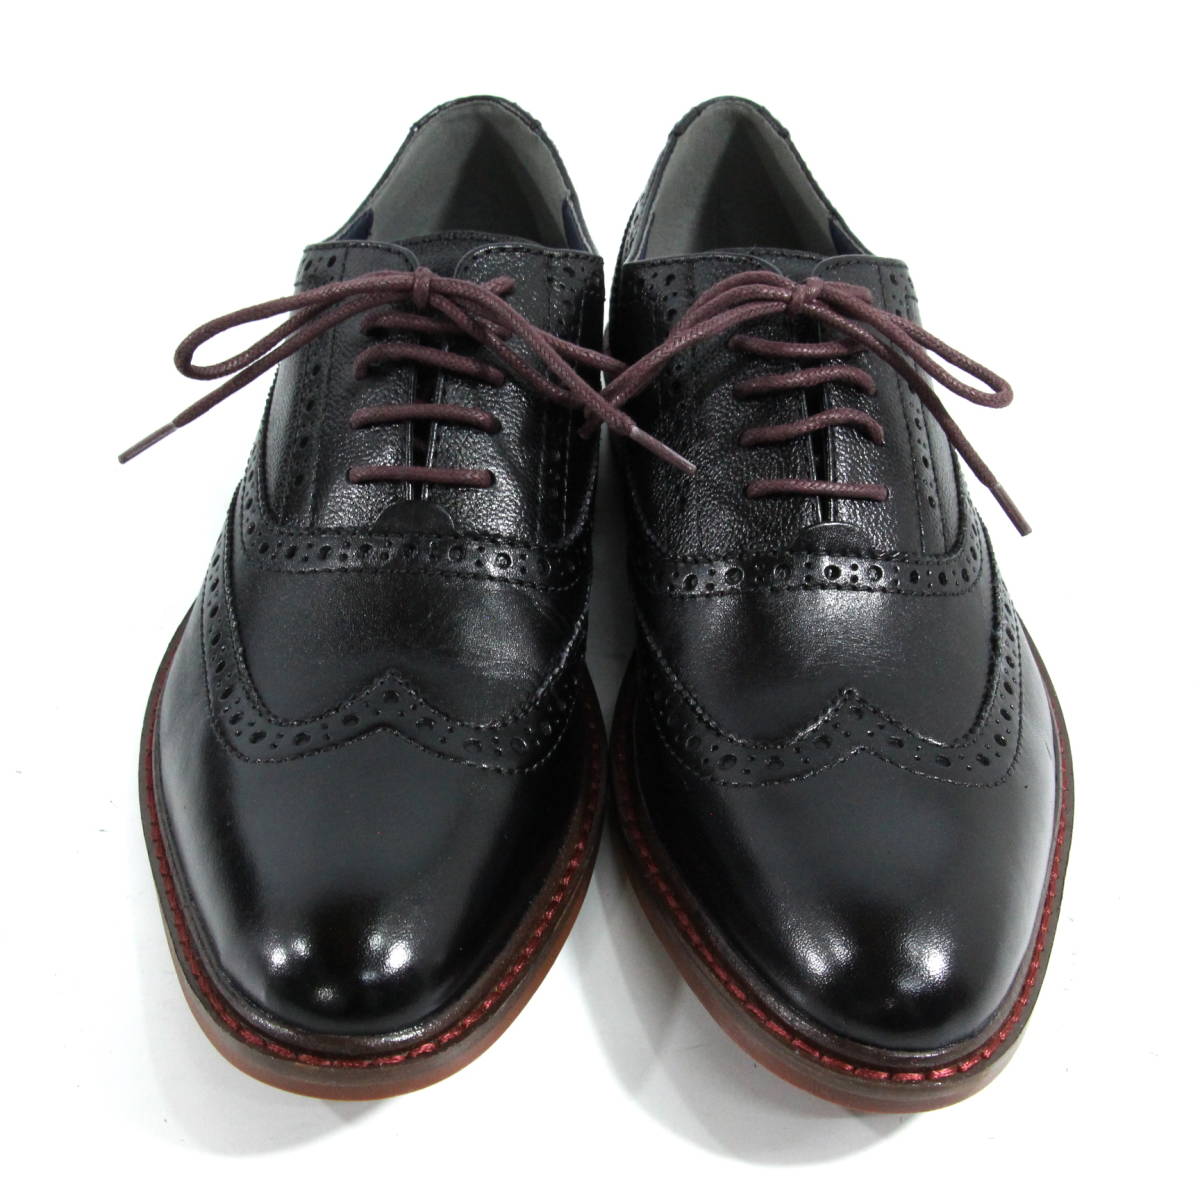 【高級品】BG レザー ウィングチップ ブーツ ローカット 25.5cm ブラック 黒 ローファー ビジネス ドレス シューズ 革靴 32-85ZJ50_画像3